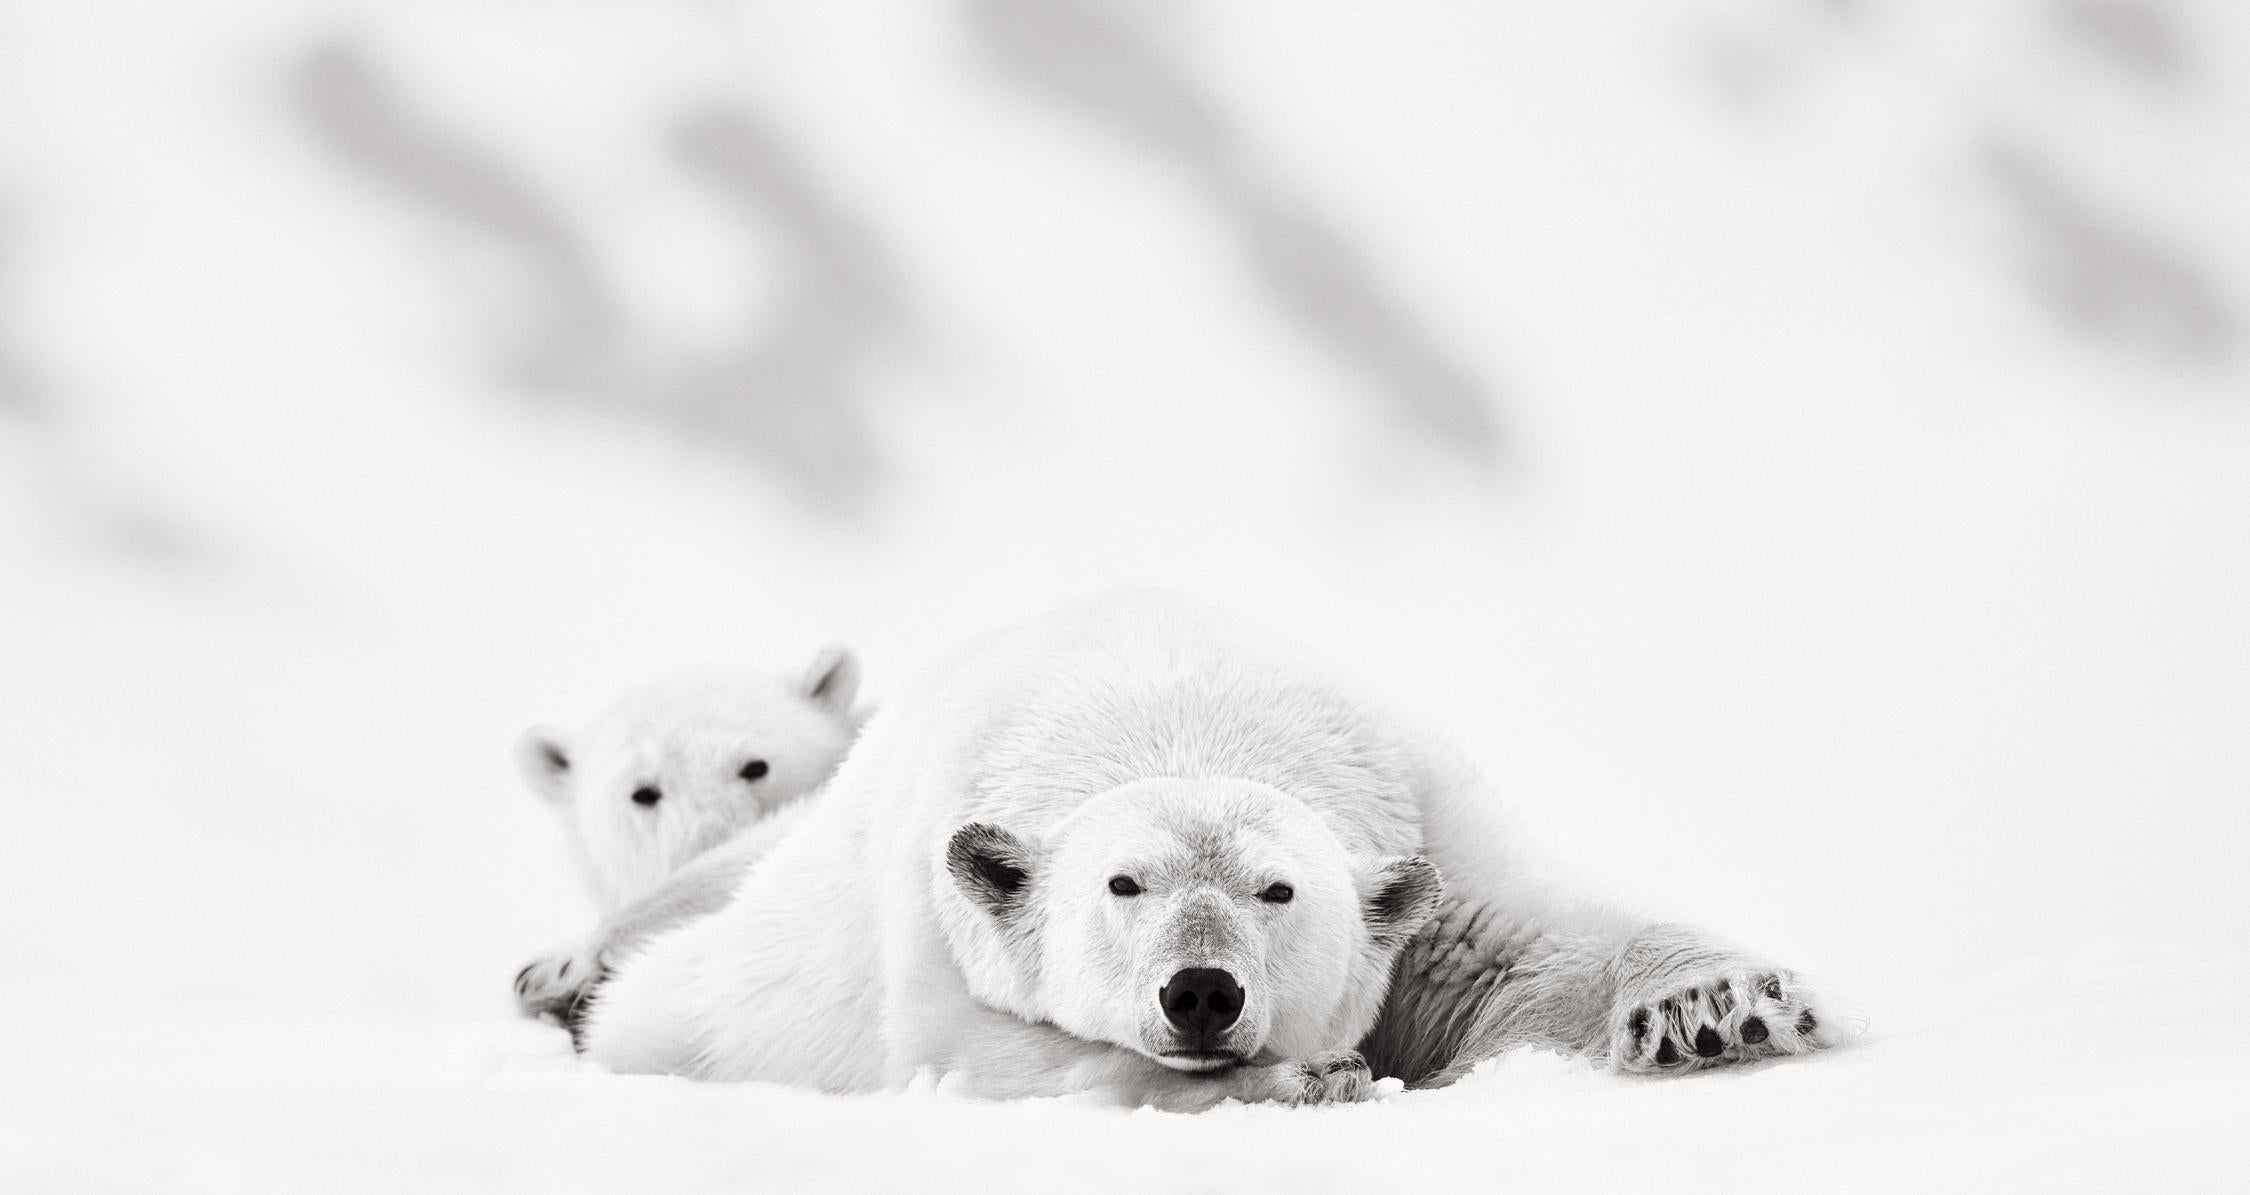 Black and White Photograph Drew Doggett - La mère et le petit ours polaire se reposent, Photographie surréaliste en noir et blanc, Vie sauvage